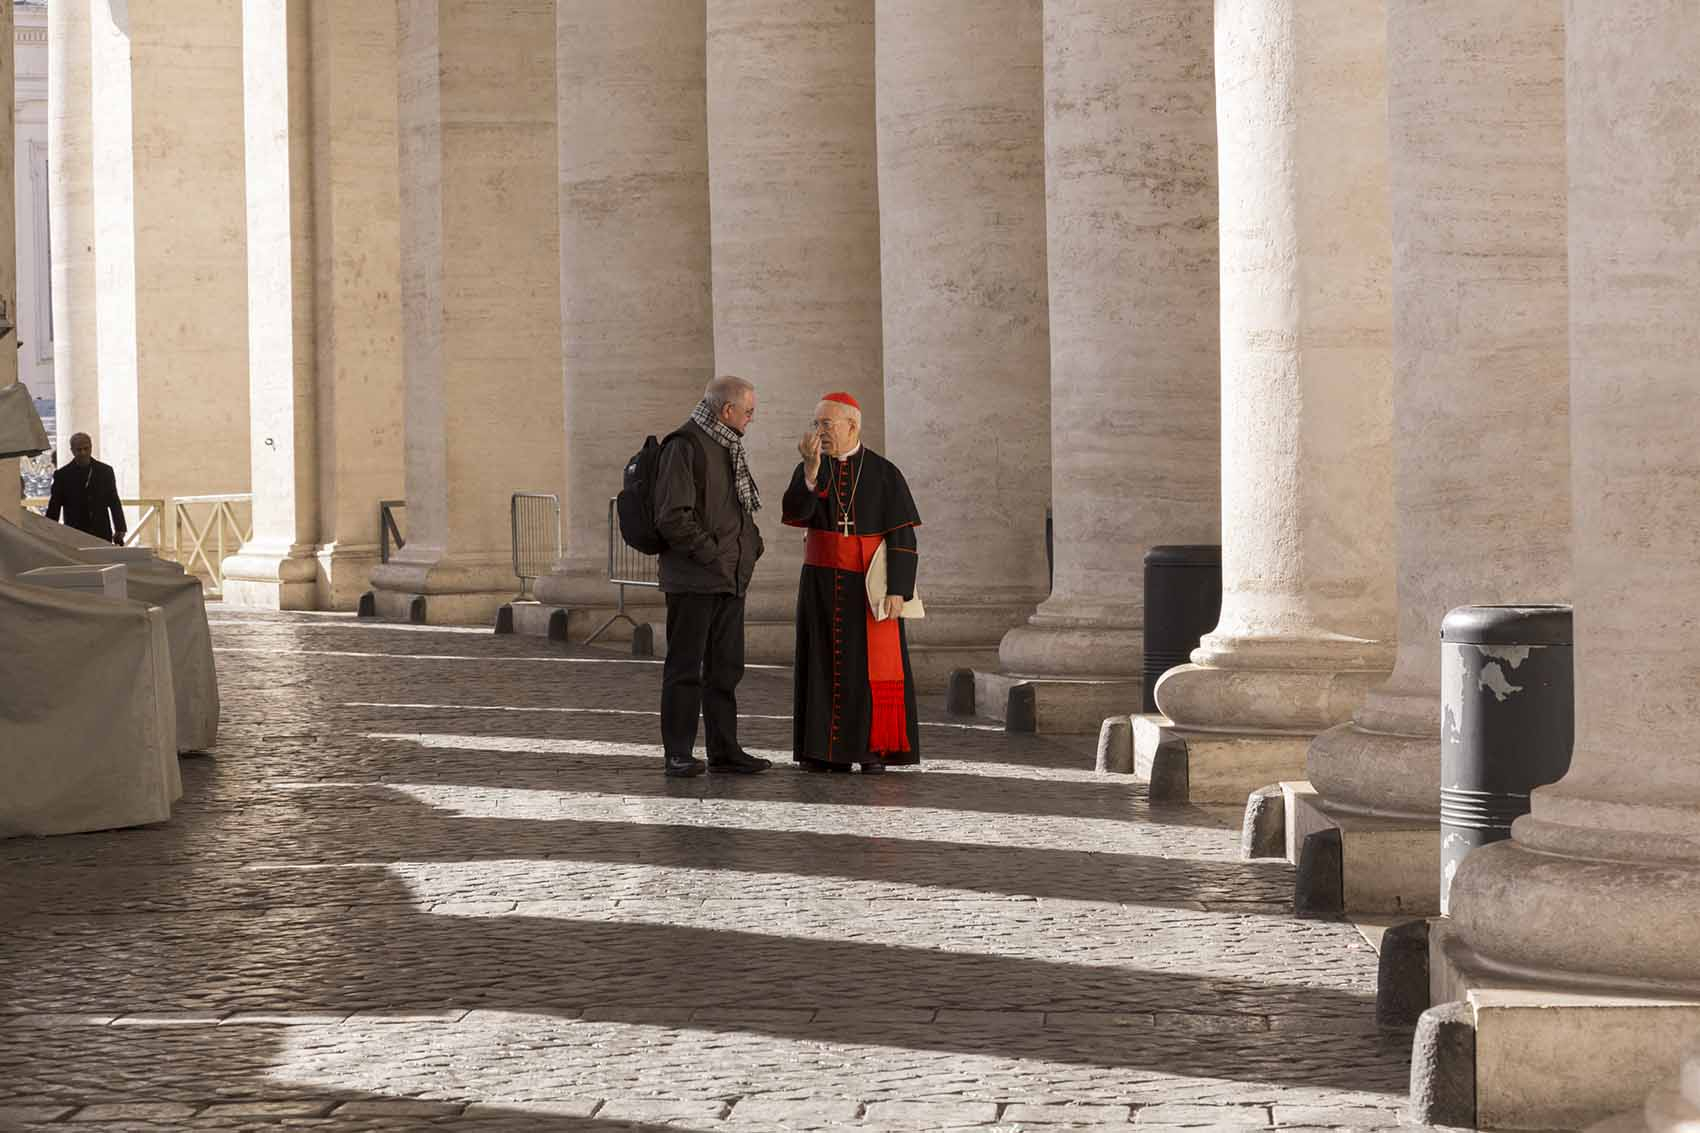 Vatican, 4 décembre 2017 ©DZarzycka/iStock.